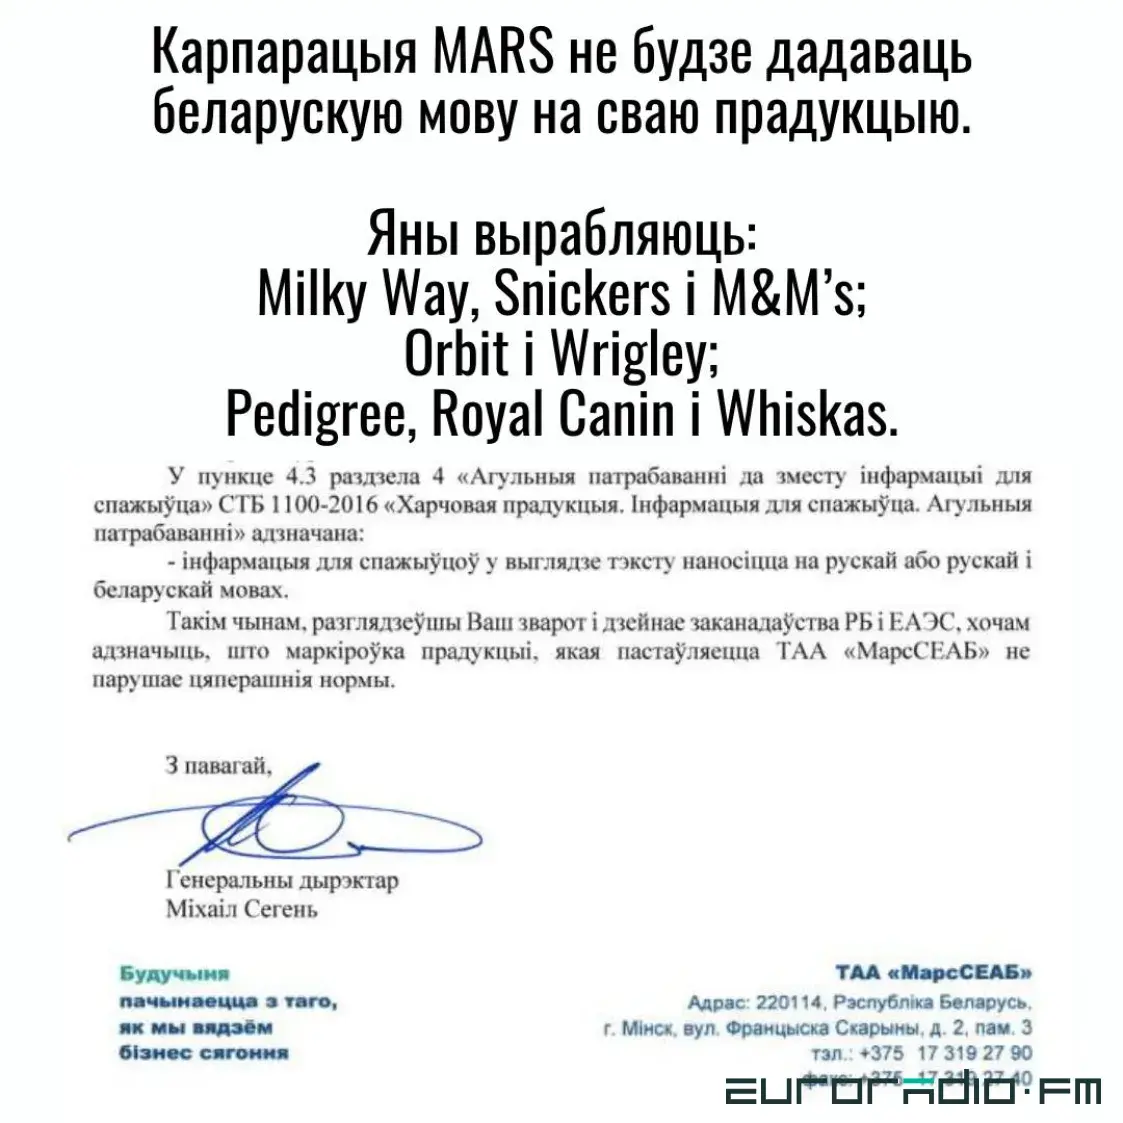 Кампанія Mars не будзе дадаваць беларускую мову на ўпакоўку сваёй прадукцыі